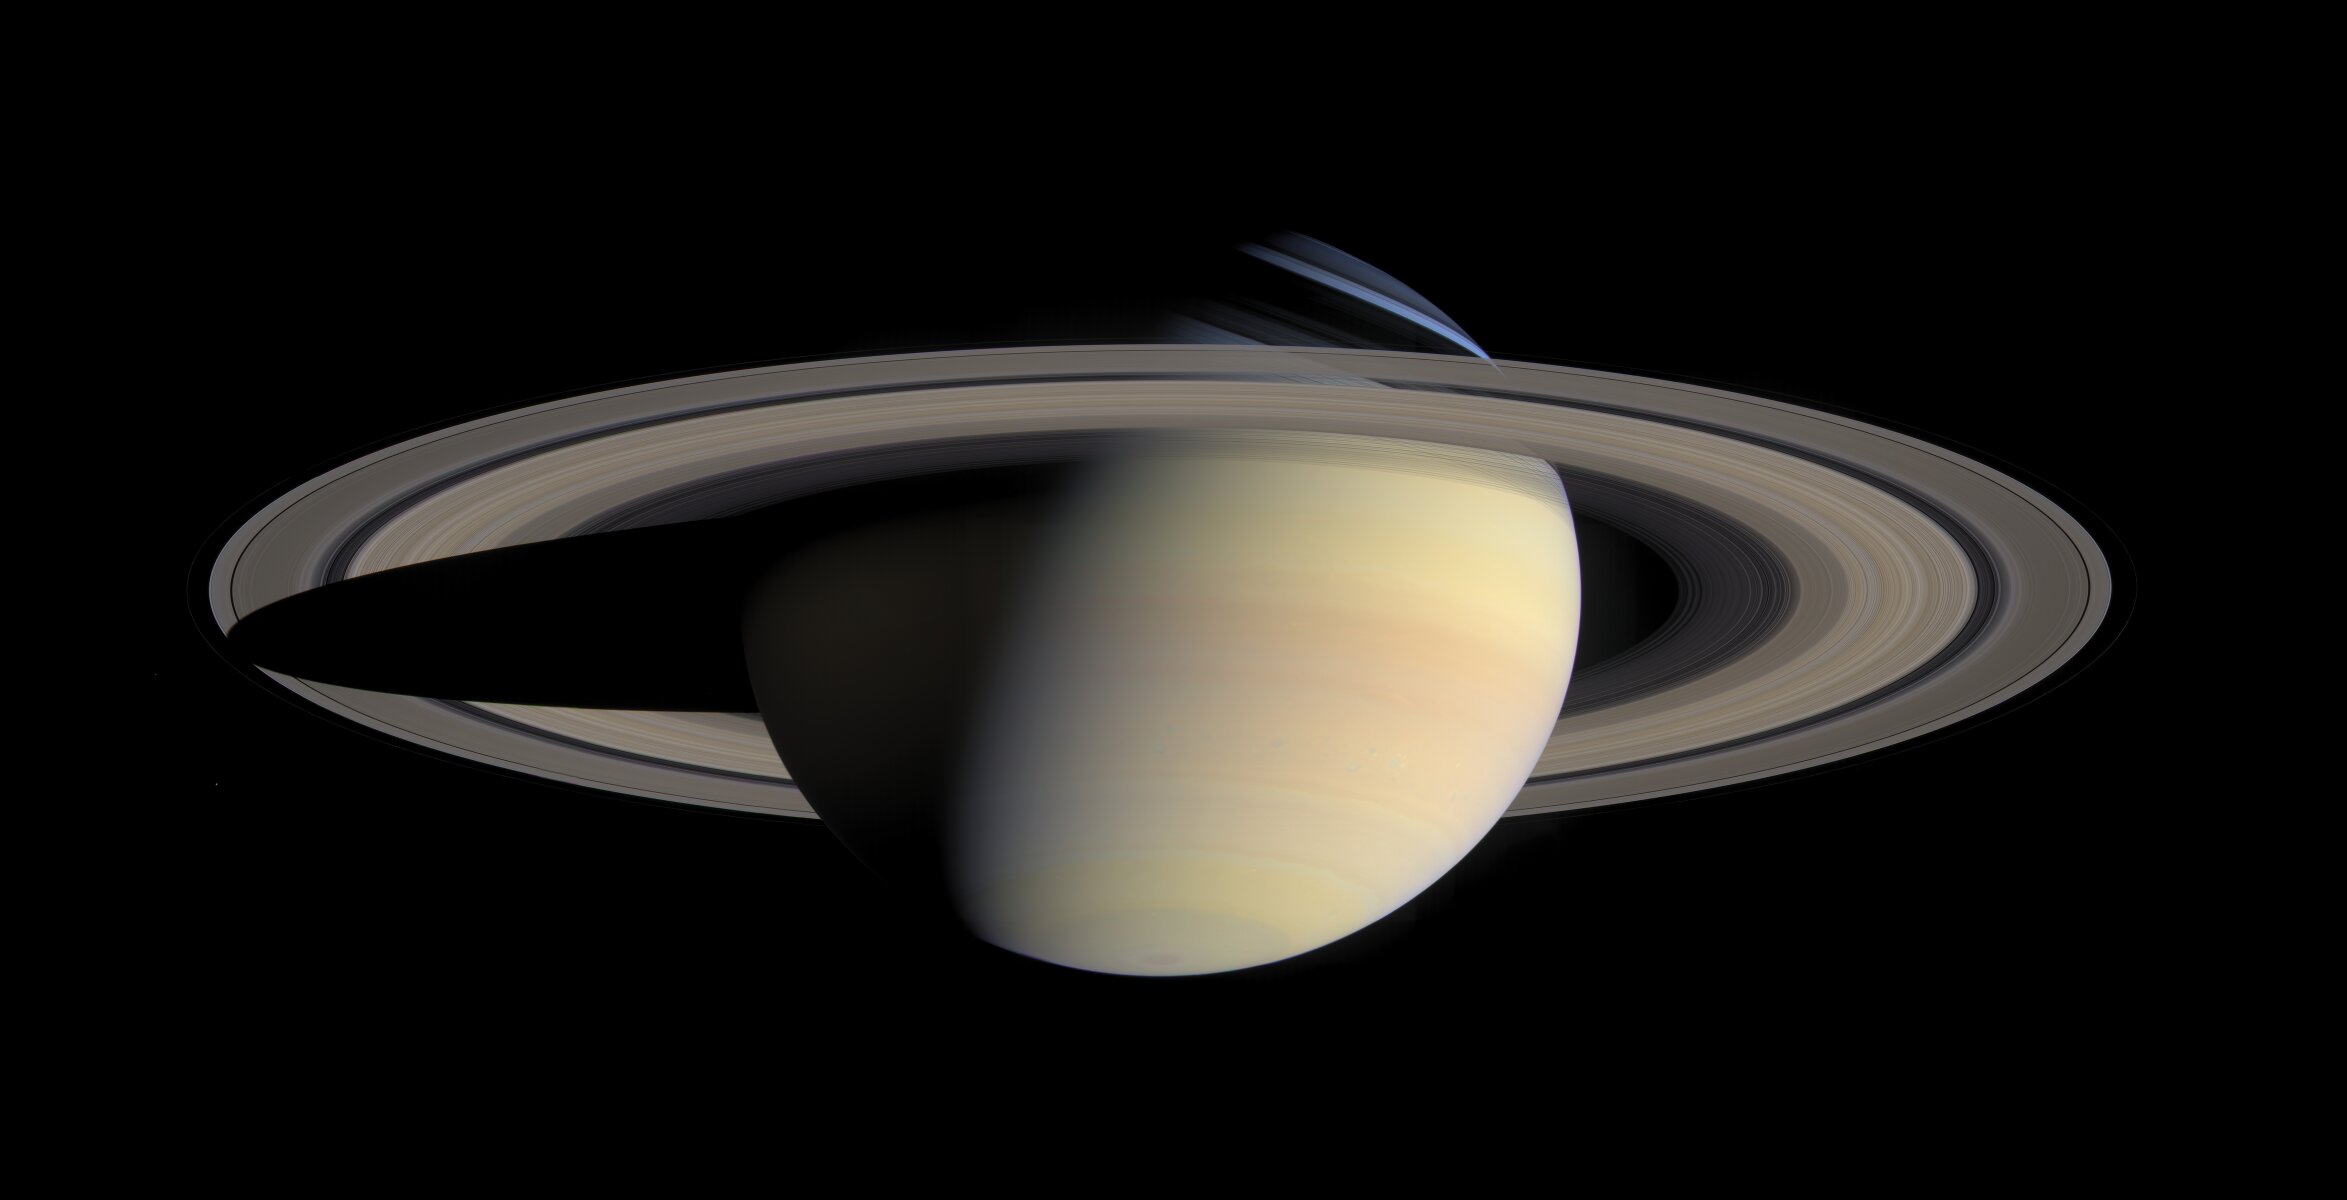 <p>Во время полета вокруг Сатурна в начале октября 2004 года &laquo;Kassini&raquo; сделал серию кадров, которые были составлены в самое большое и детализированное изображение, передающее естественный цвет и вид Сатурна. Эта грандиозная мозаика&nbsp;состоит из 126 снимков.</p>